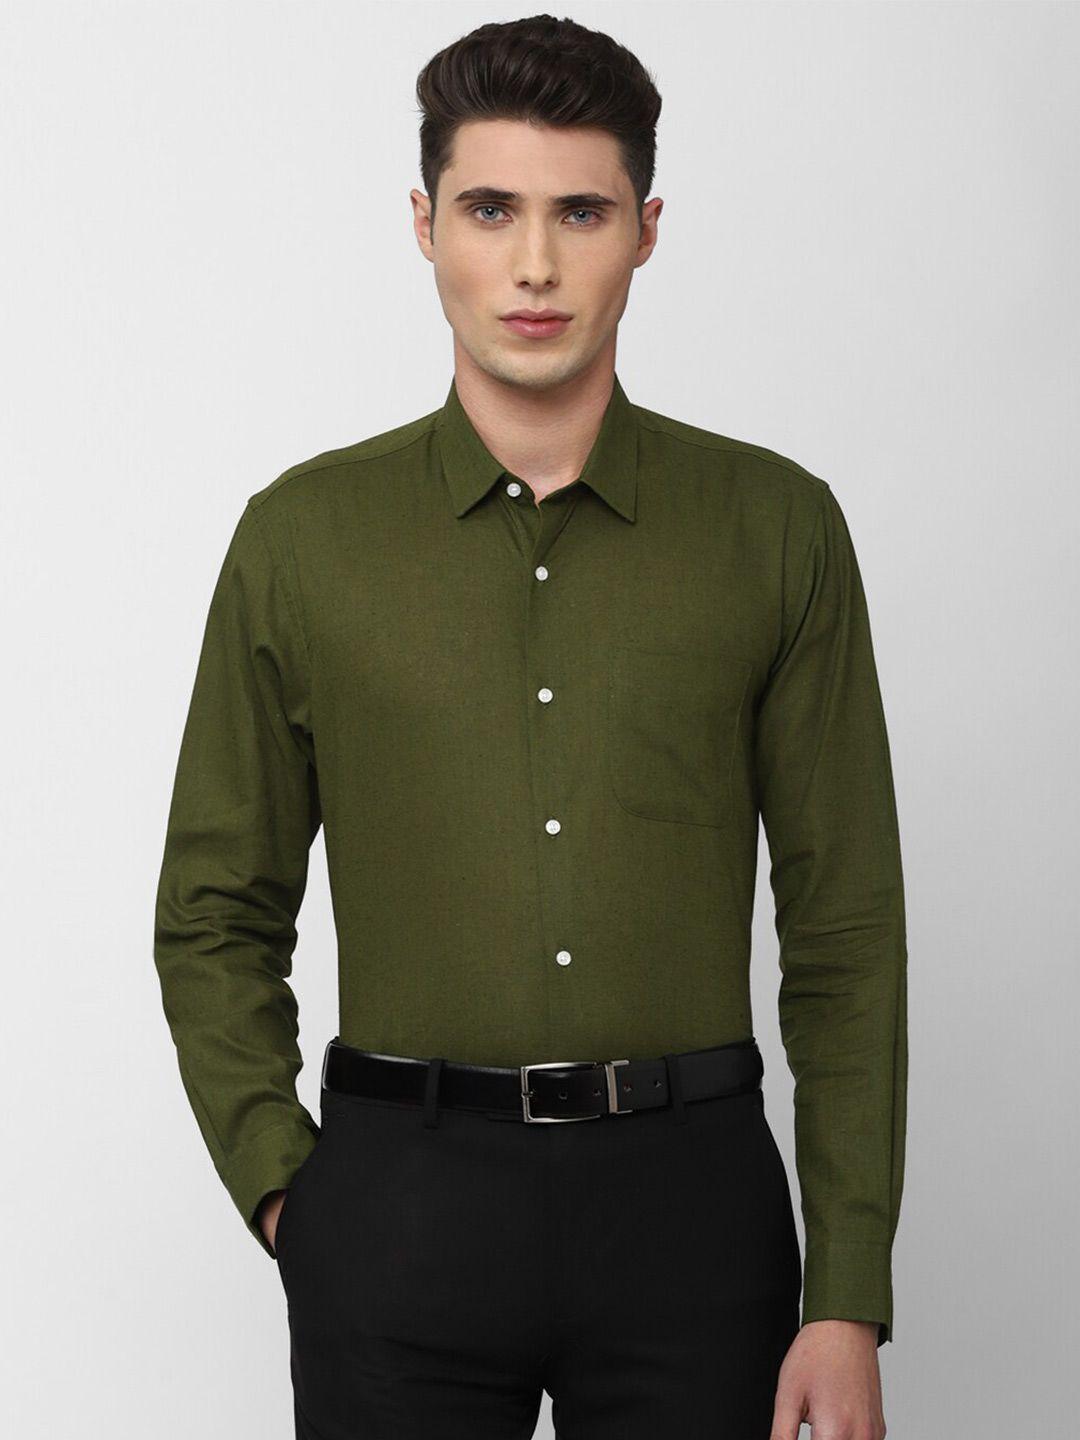 peter england men olive green formal shirt